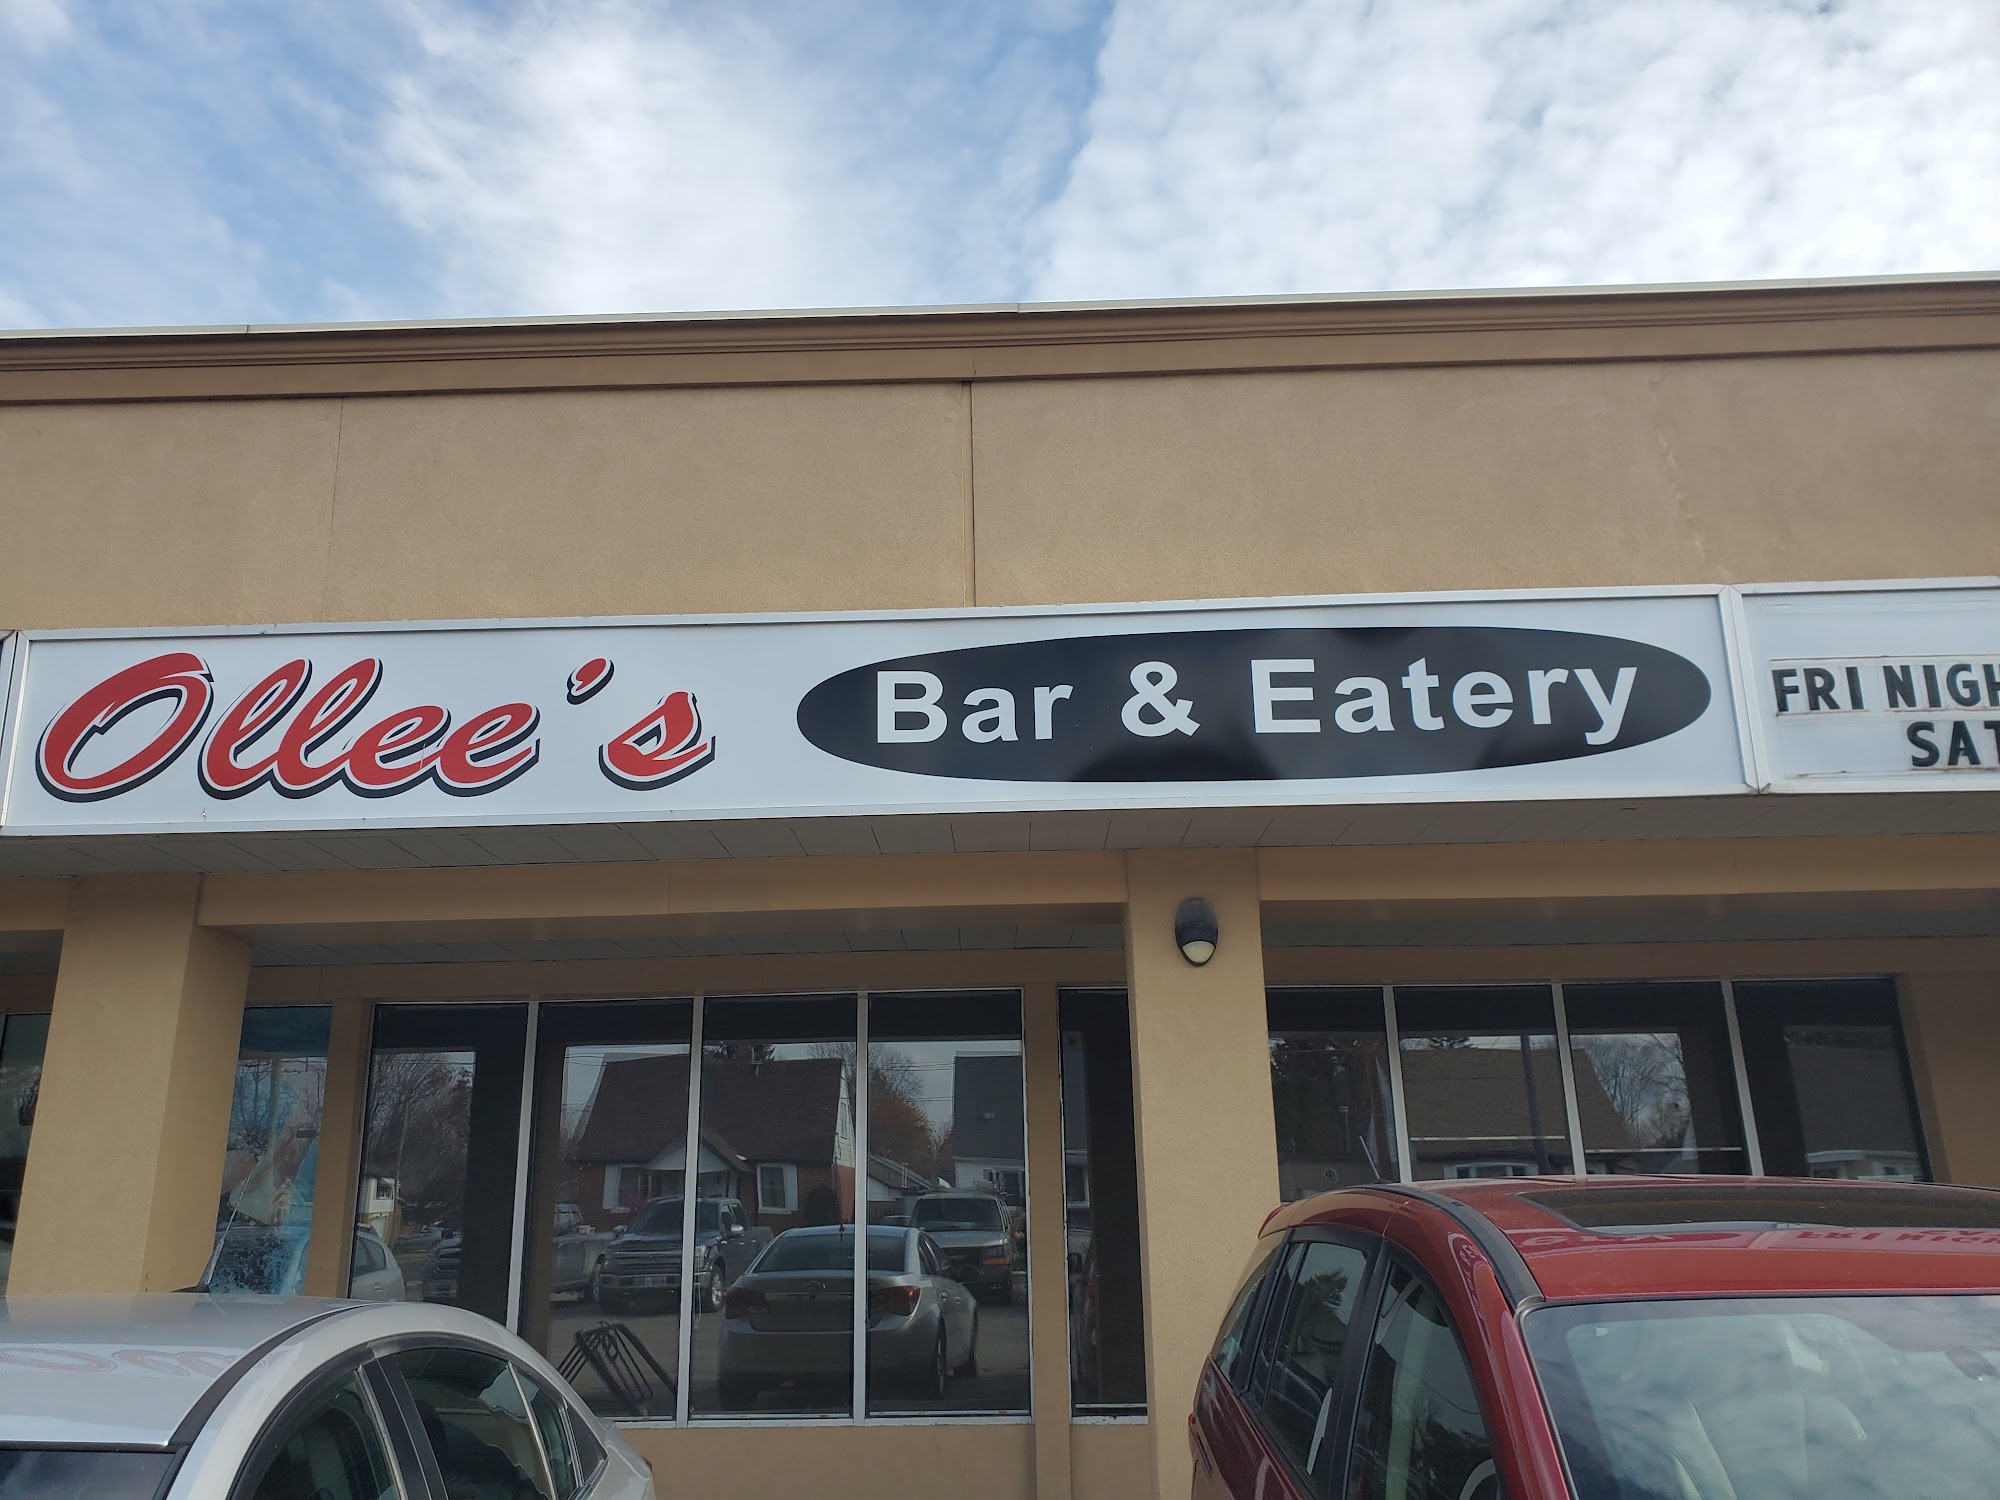 Ollee's Bar & Eatery